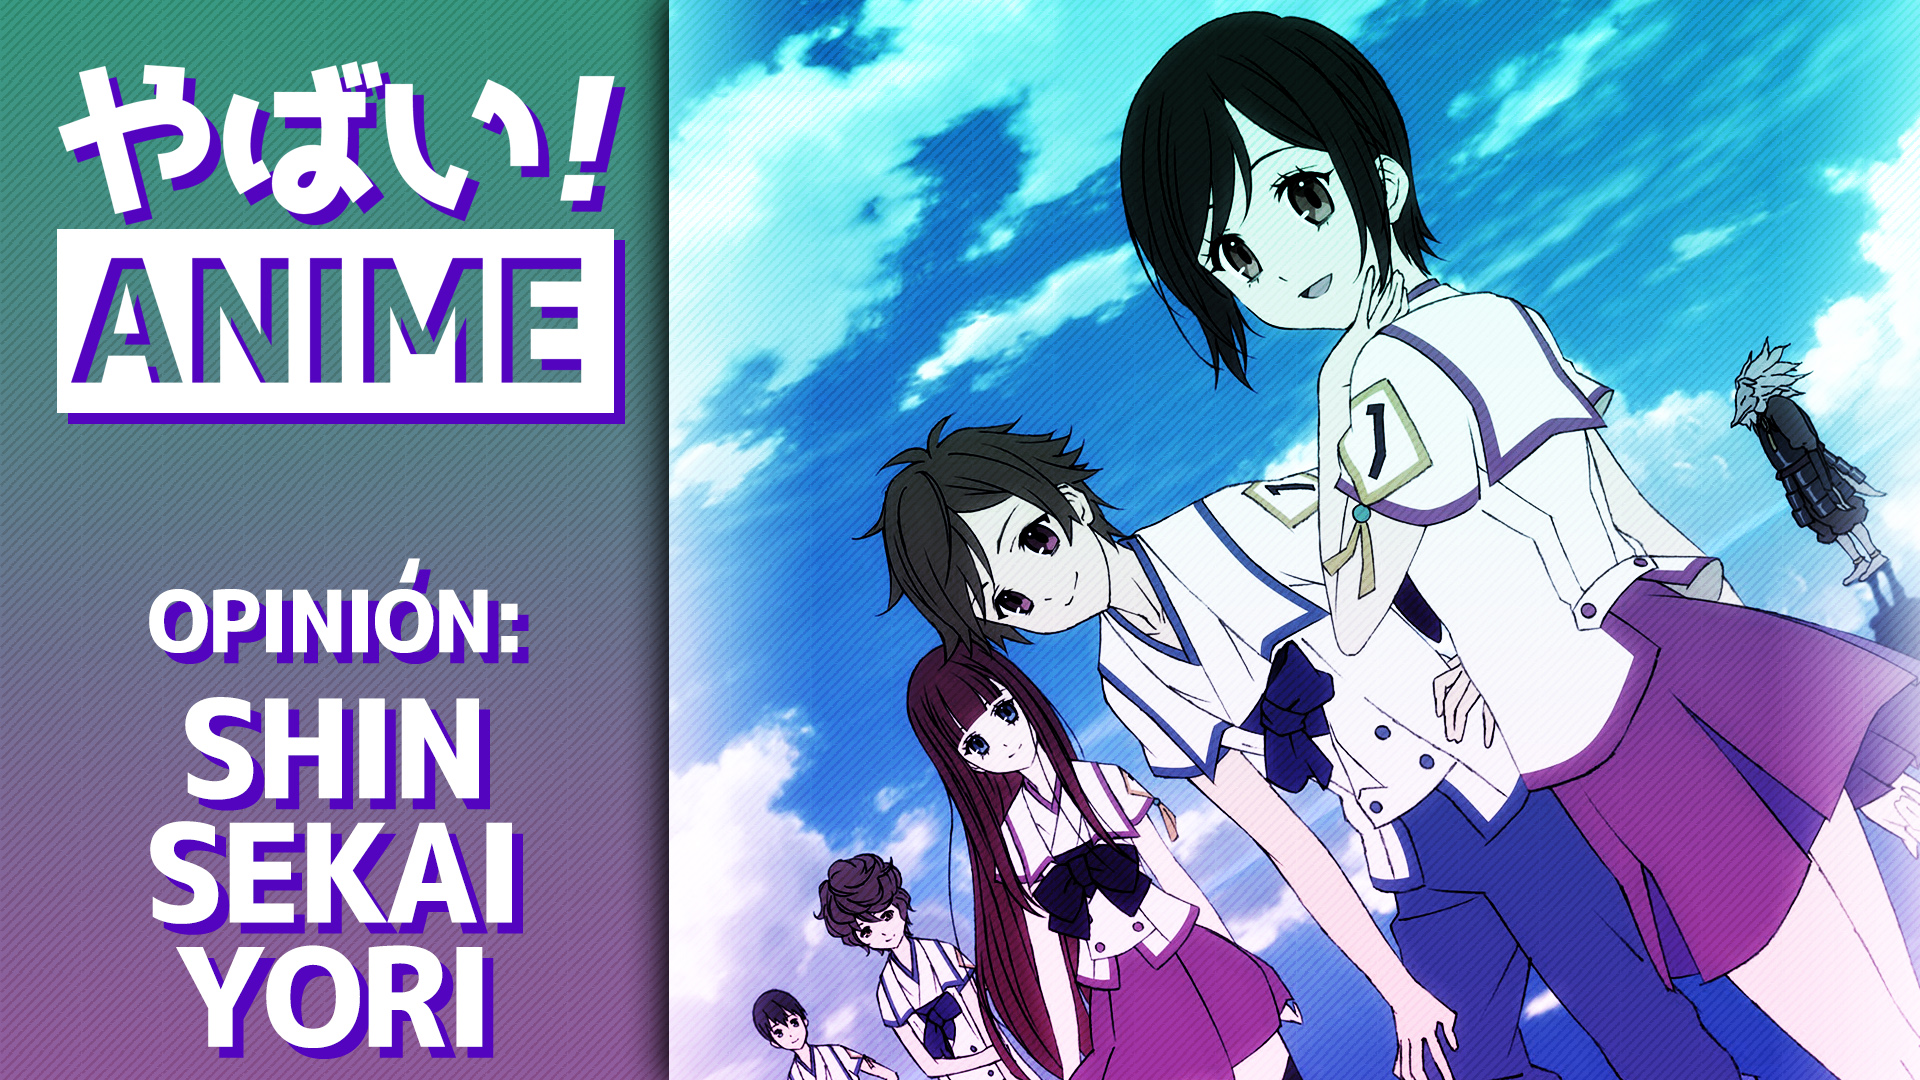 Shin Sekai Yori (From The New World) – Yabai! Anime